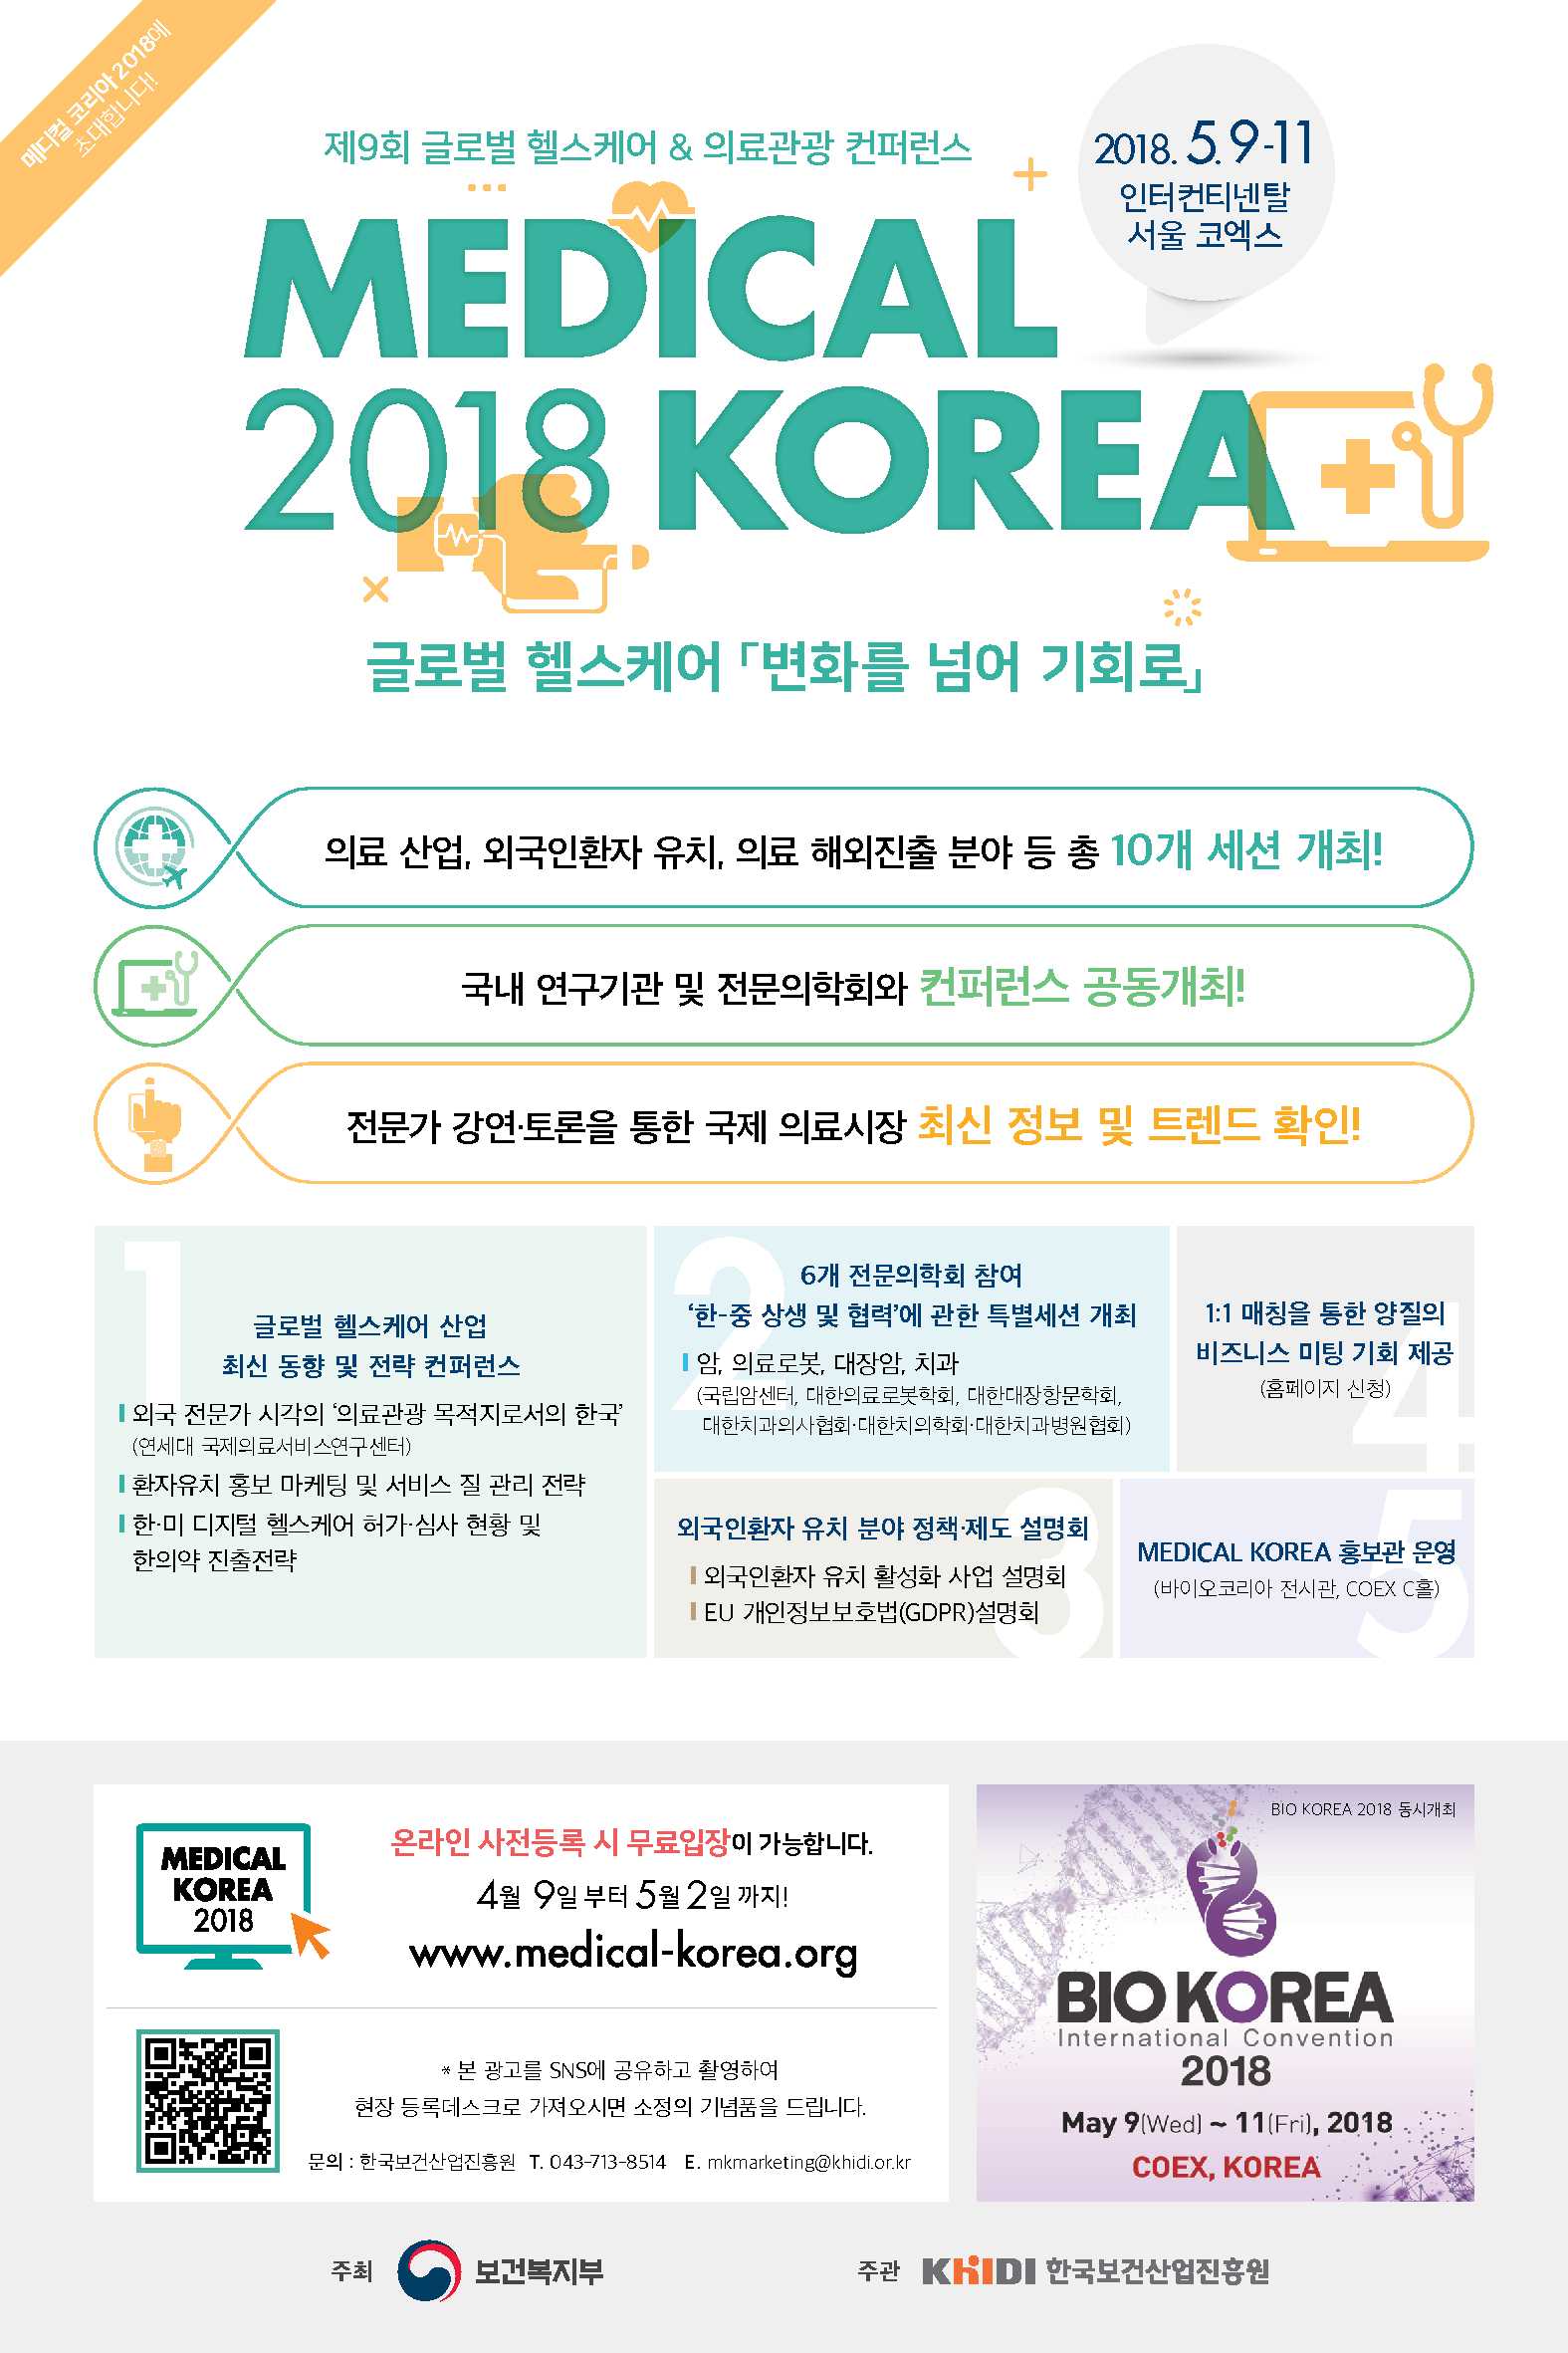 [보건복지부] Medical Korea 2018 컨퍼런스 개최(5.9~11, 인터컨티넨탈 서울 코엑스)-자세한 내용은 아래 텍스트 참고